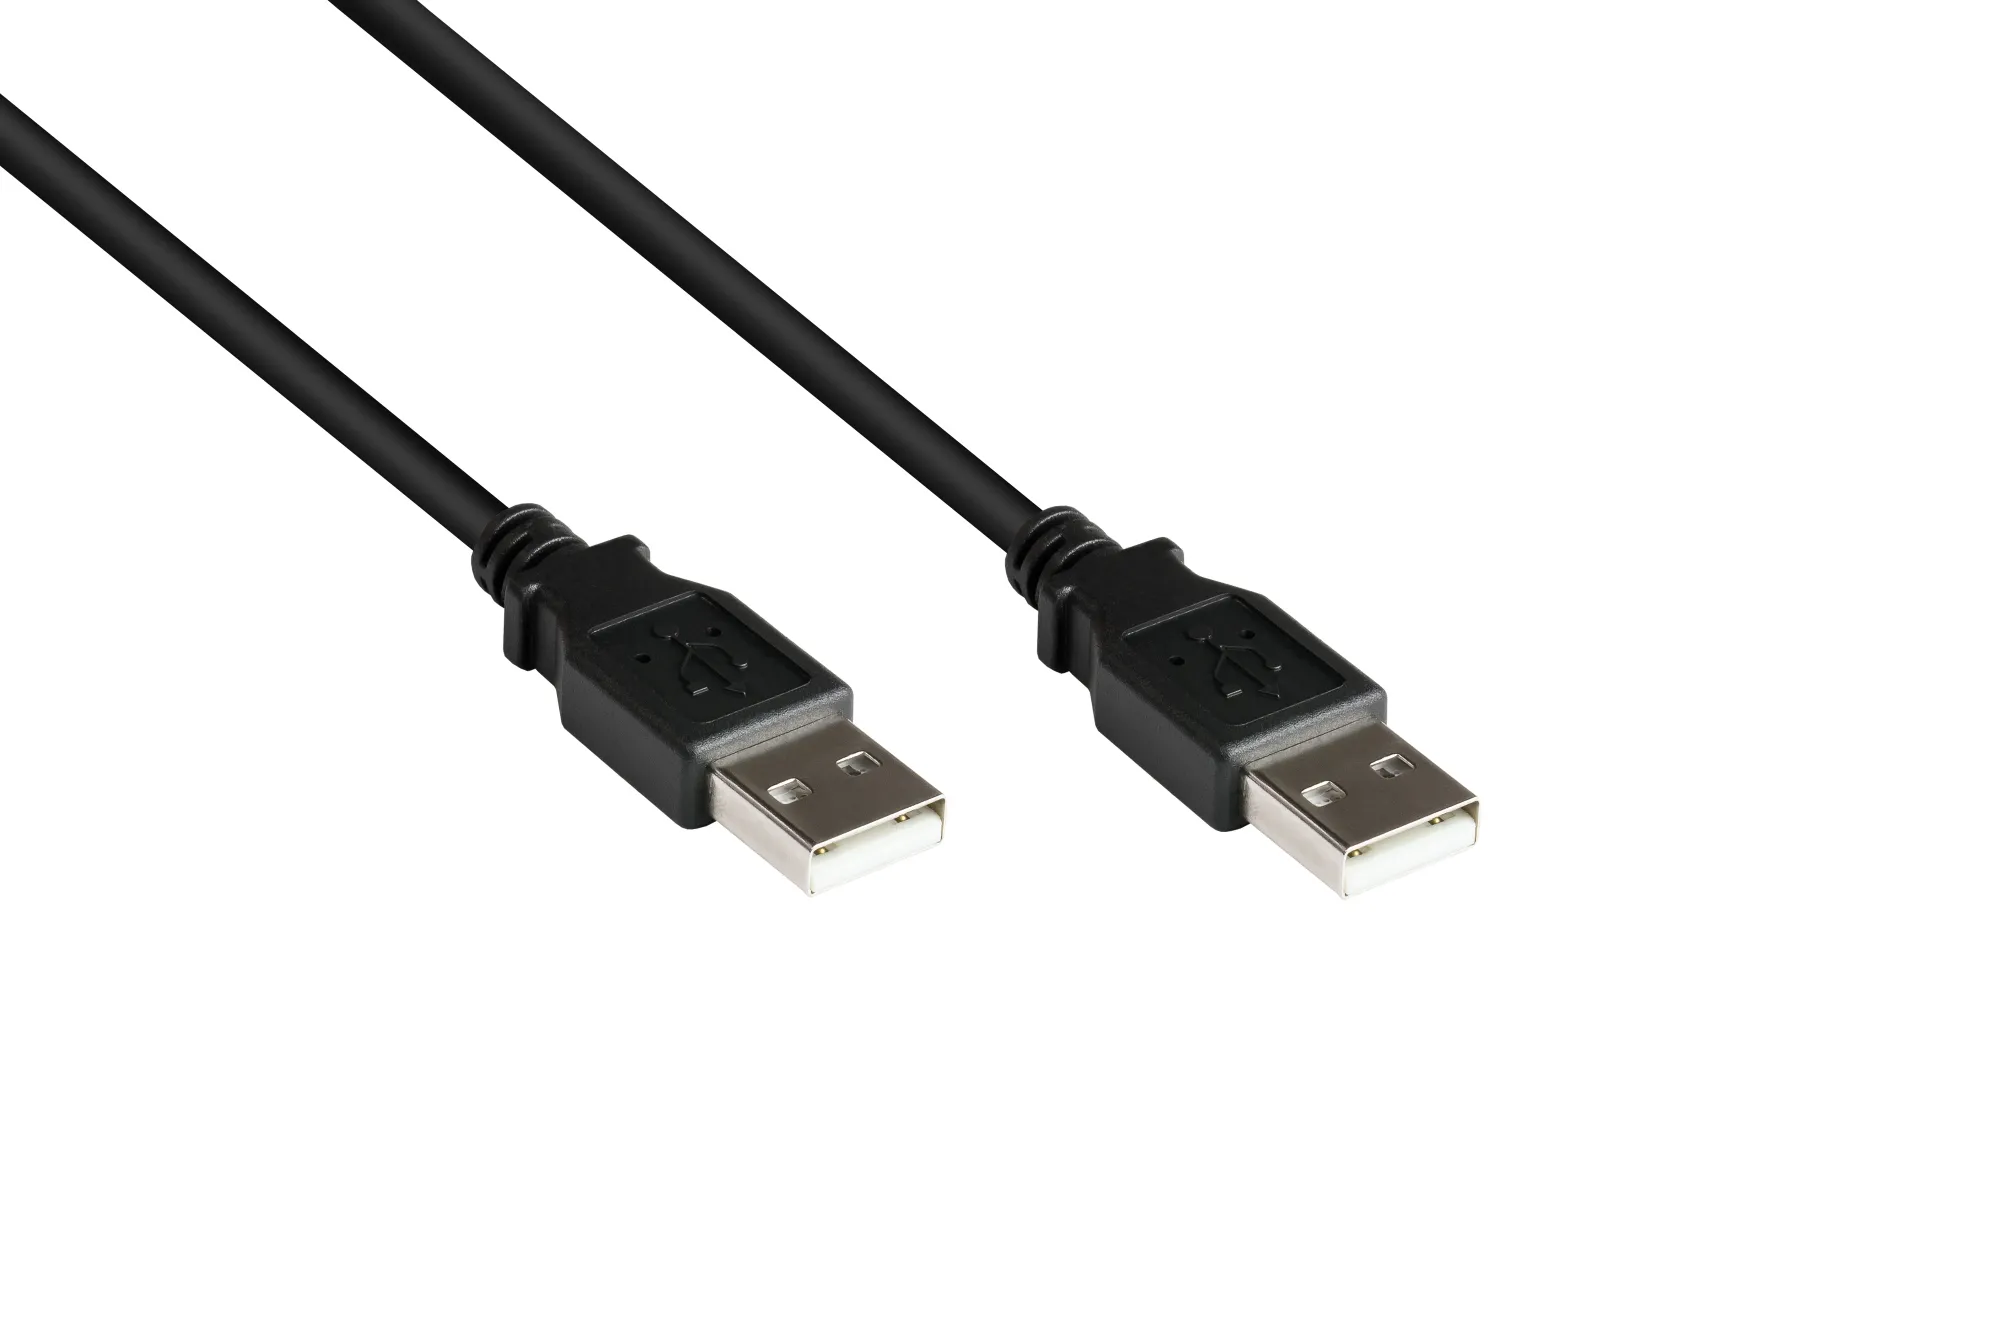 Anschlusskabel USB 2.0 Stecker A an Stecker A, schwarz, 5m, Good Connections®